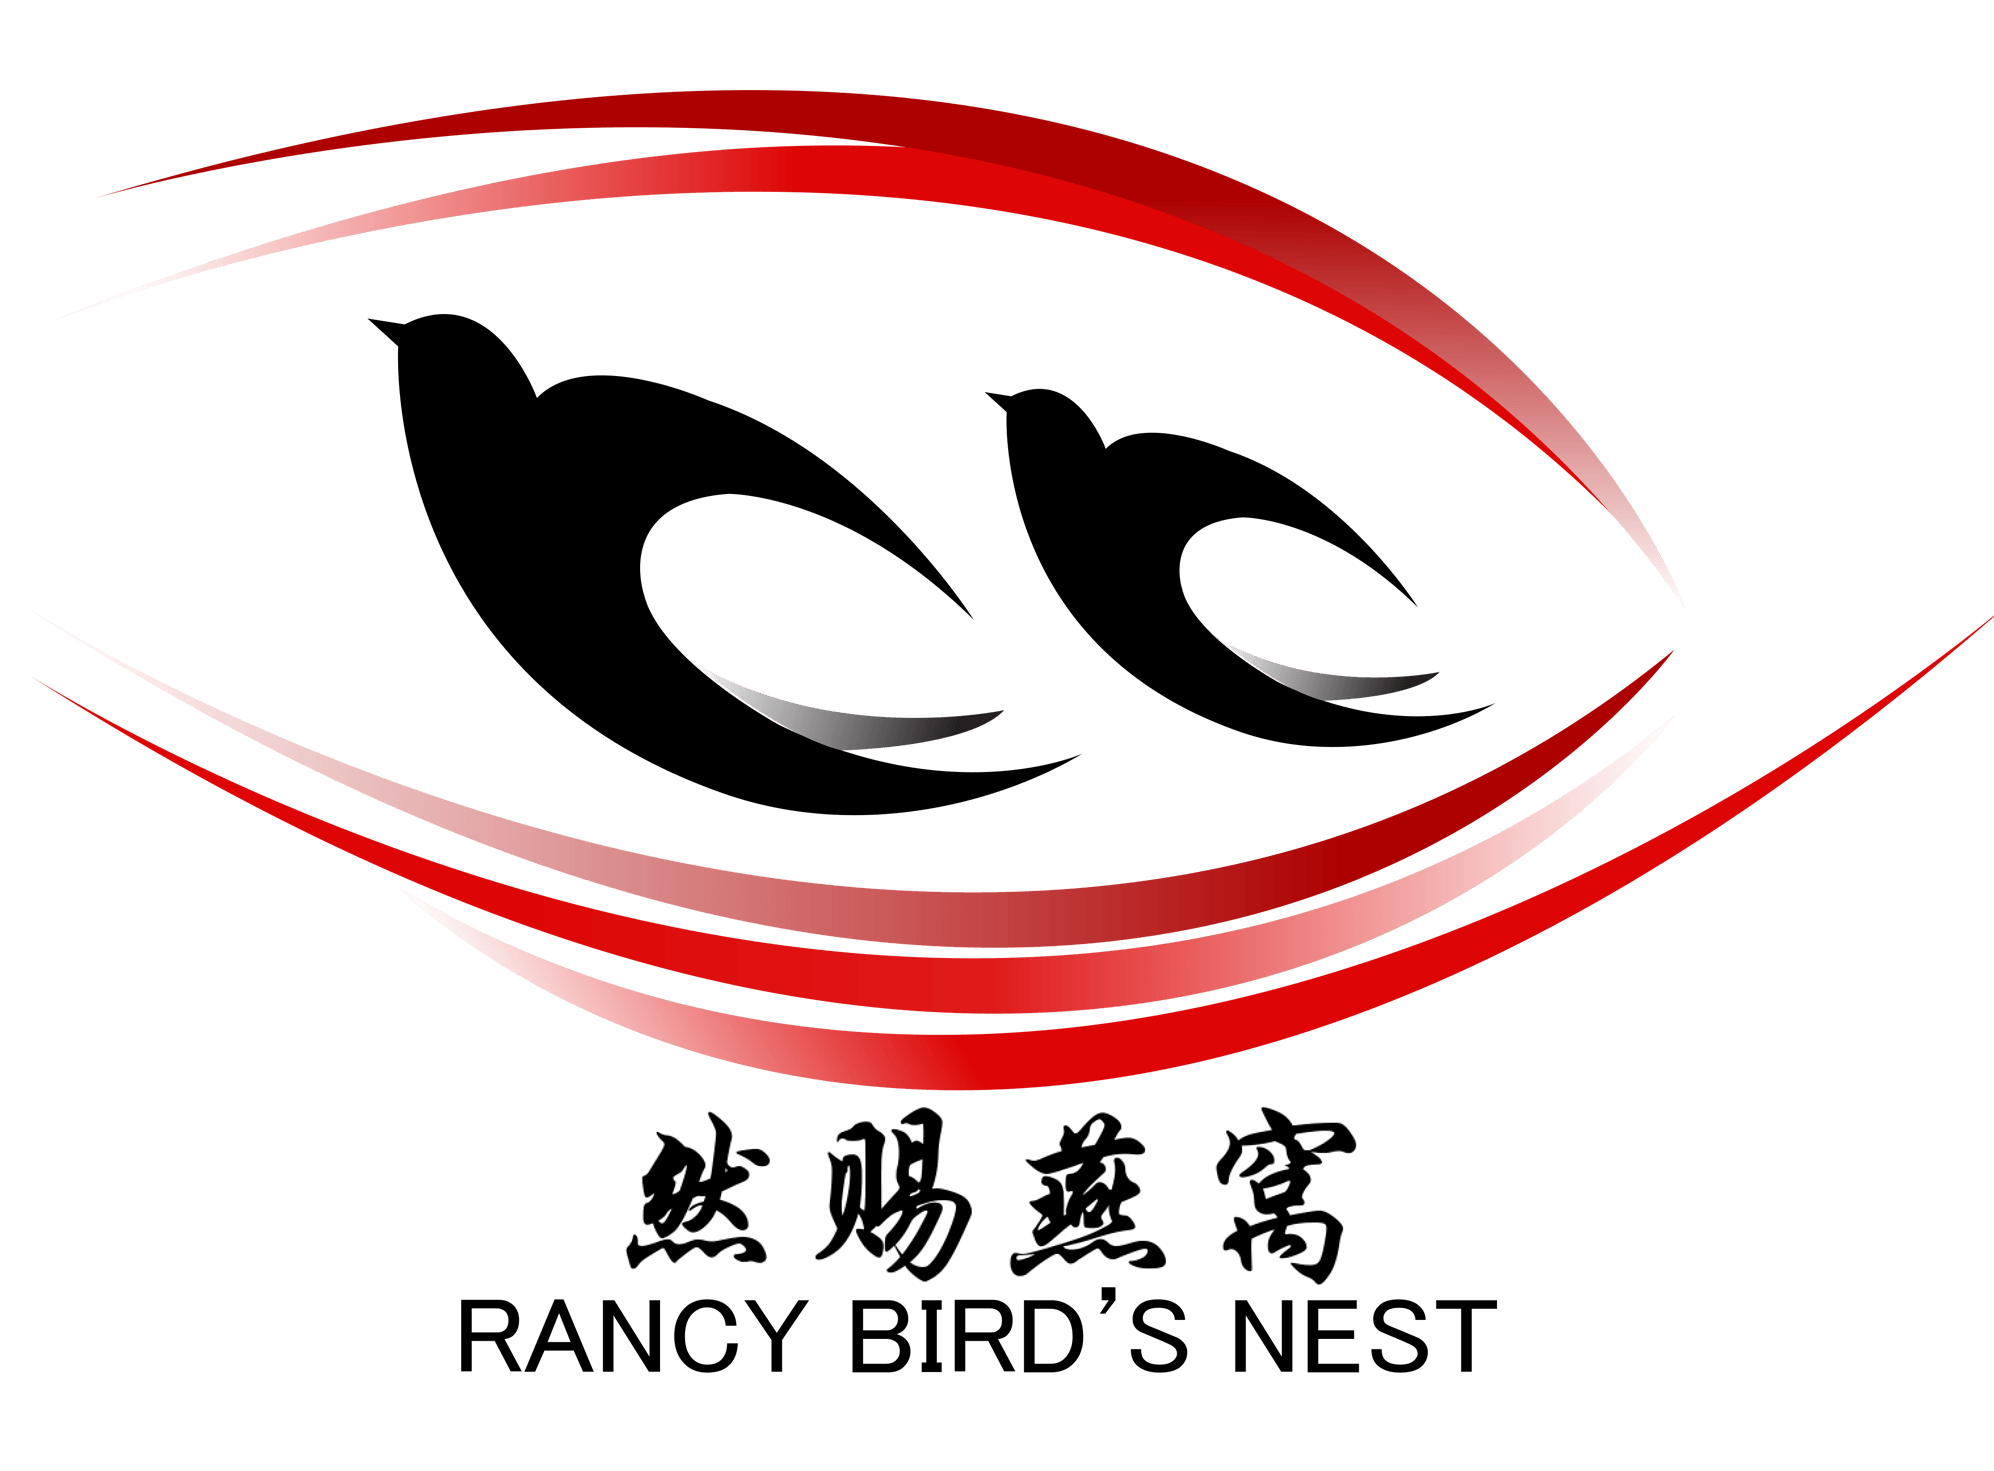 Birds in Nest Logo - Premium Bird Nest | Rancy Bird Nest